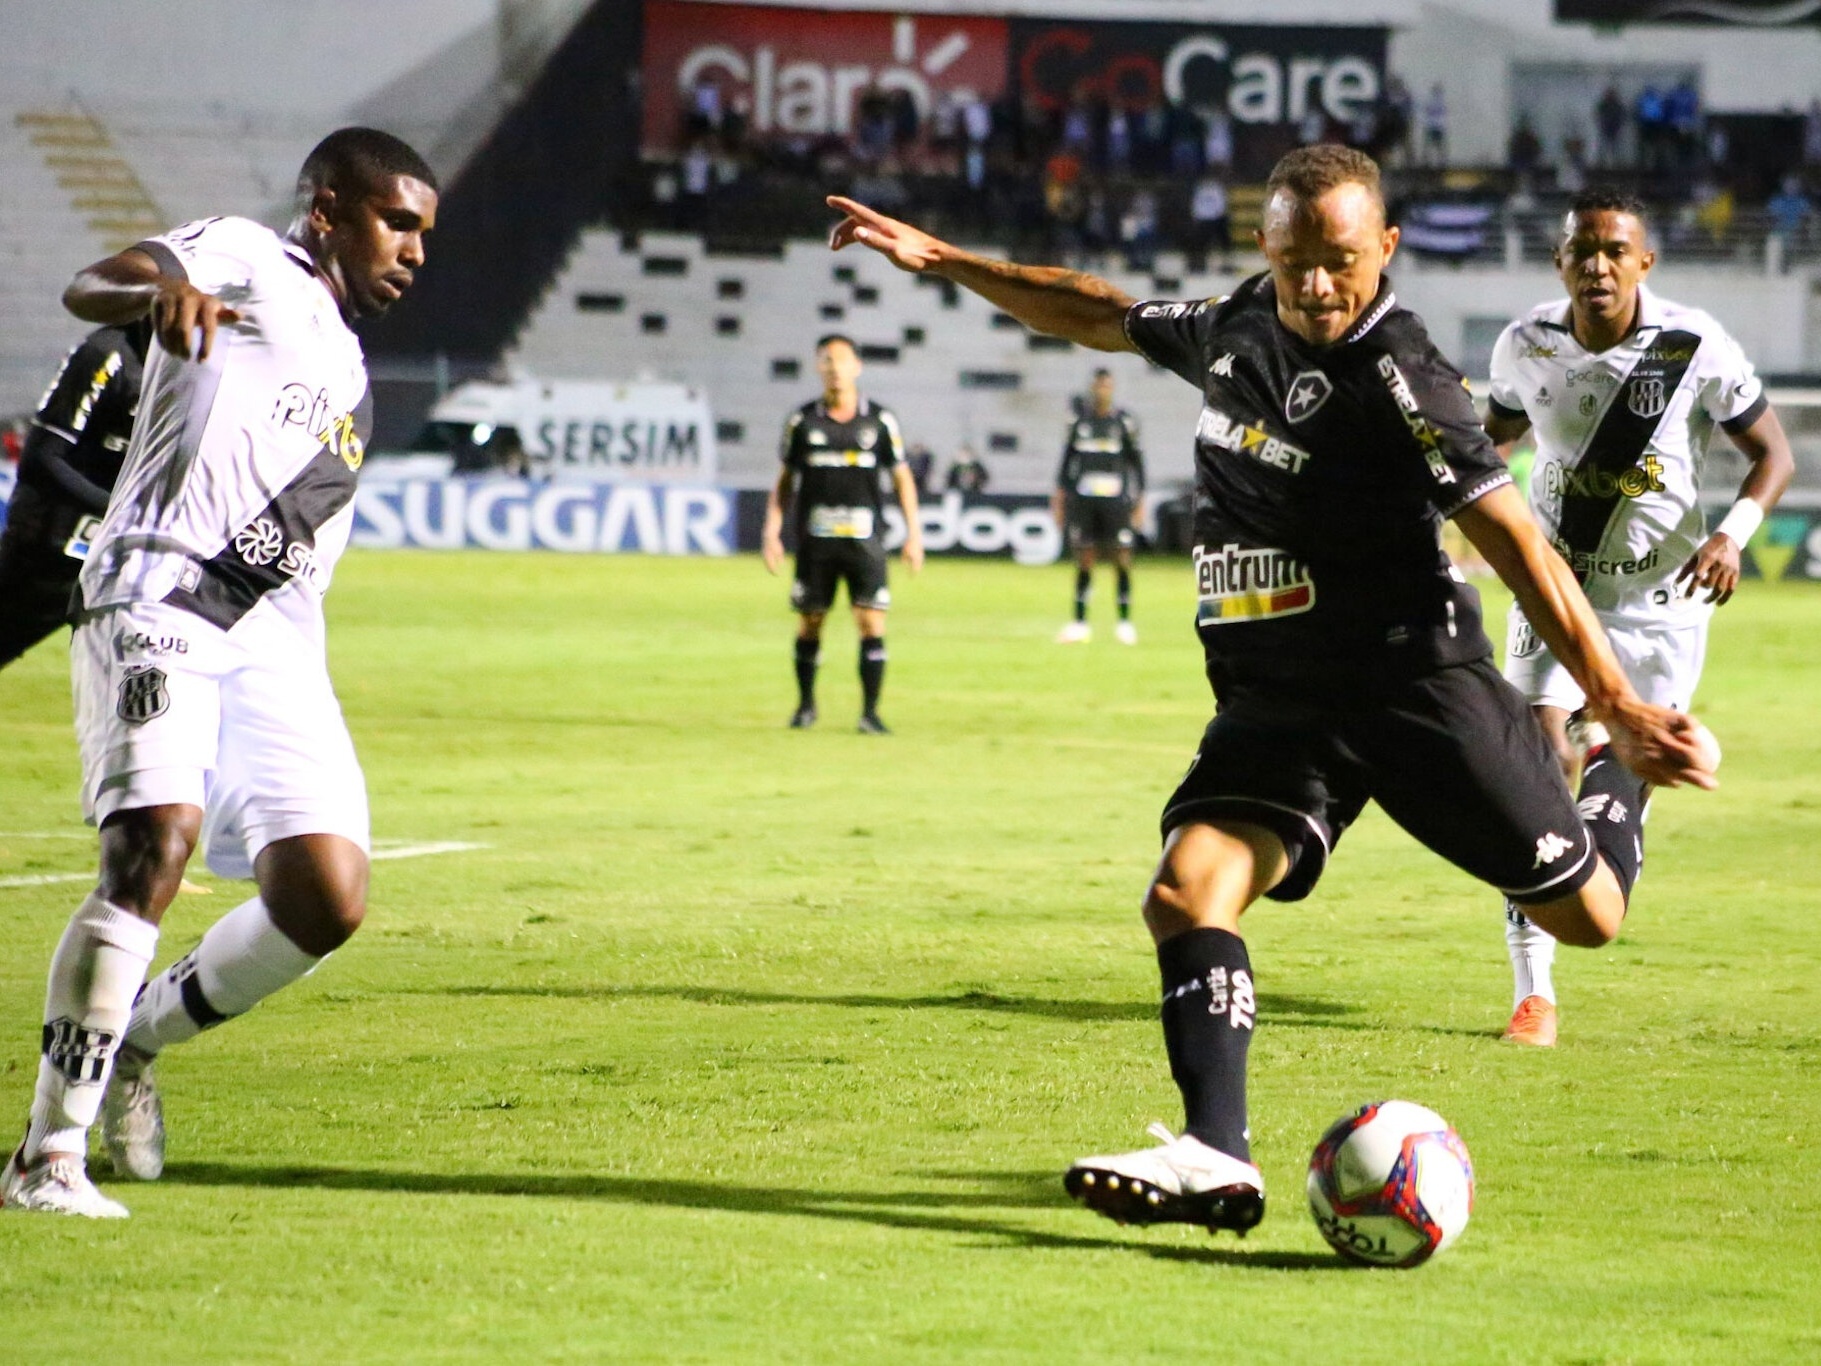 Sport fica no empate com o Botafogo-SP, pela Série B - Folha PE